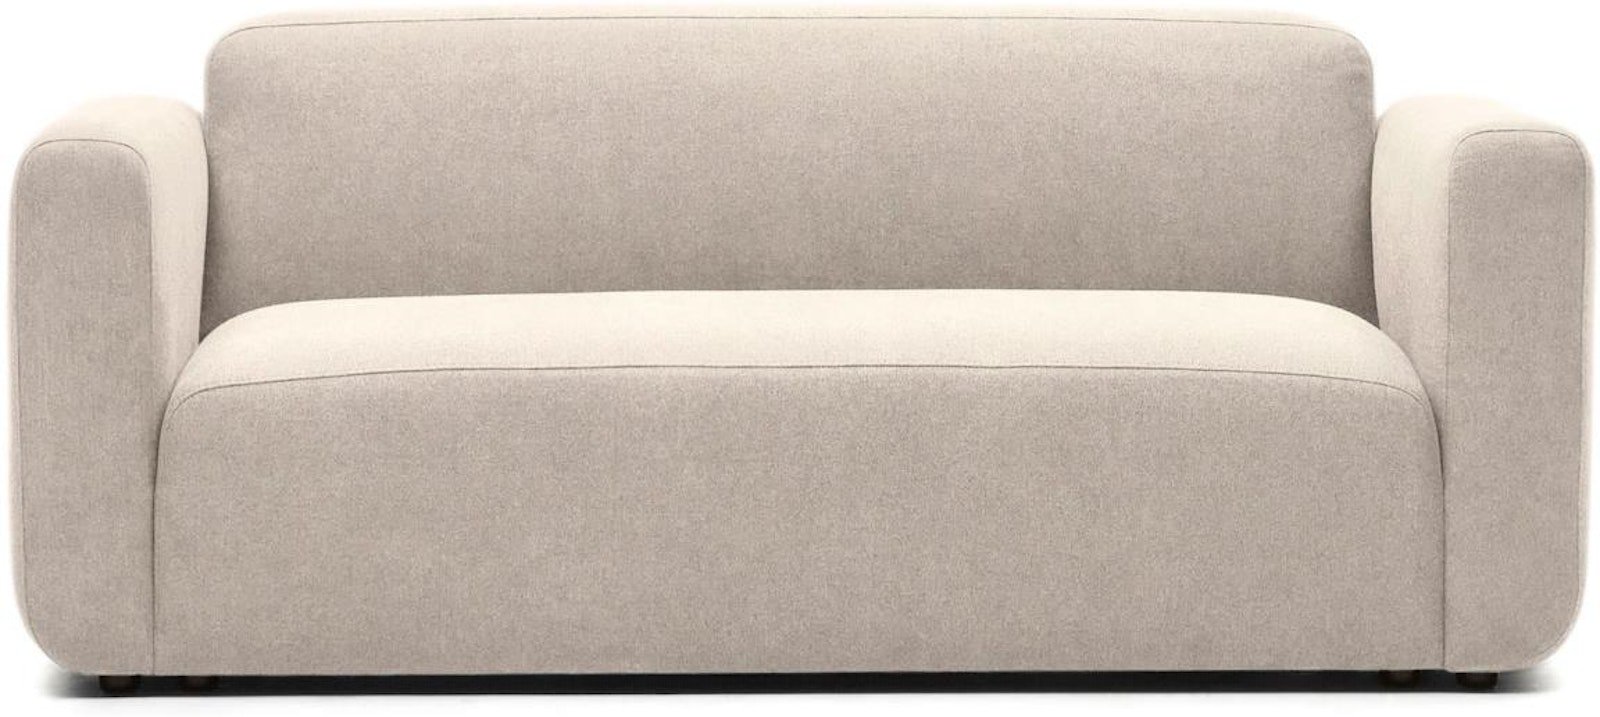 Neom, 2-personers sofa, moderne, nordisk, solidt træ by Laforma (H: 78 cm. x B: 188 cm. x L: 89 cm., Beige)